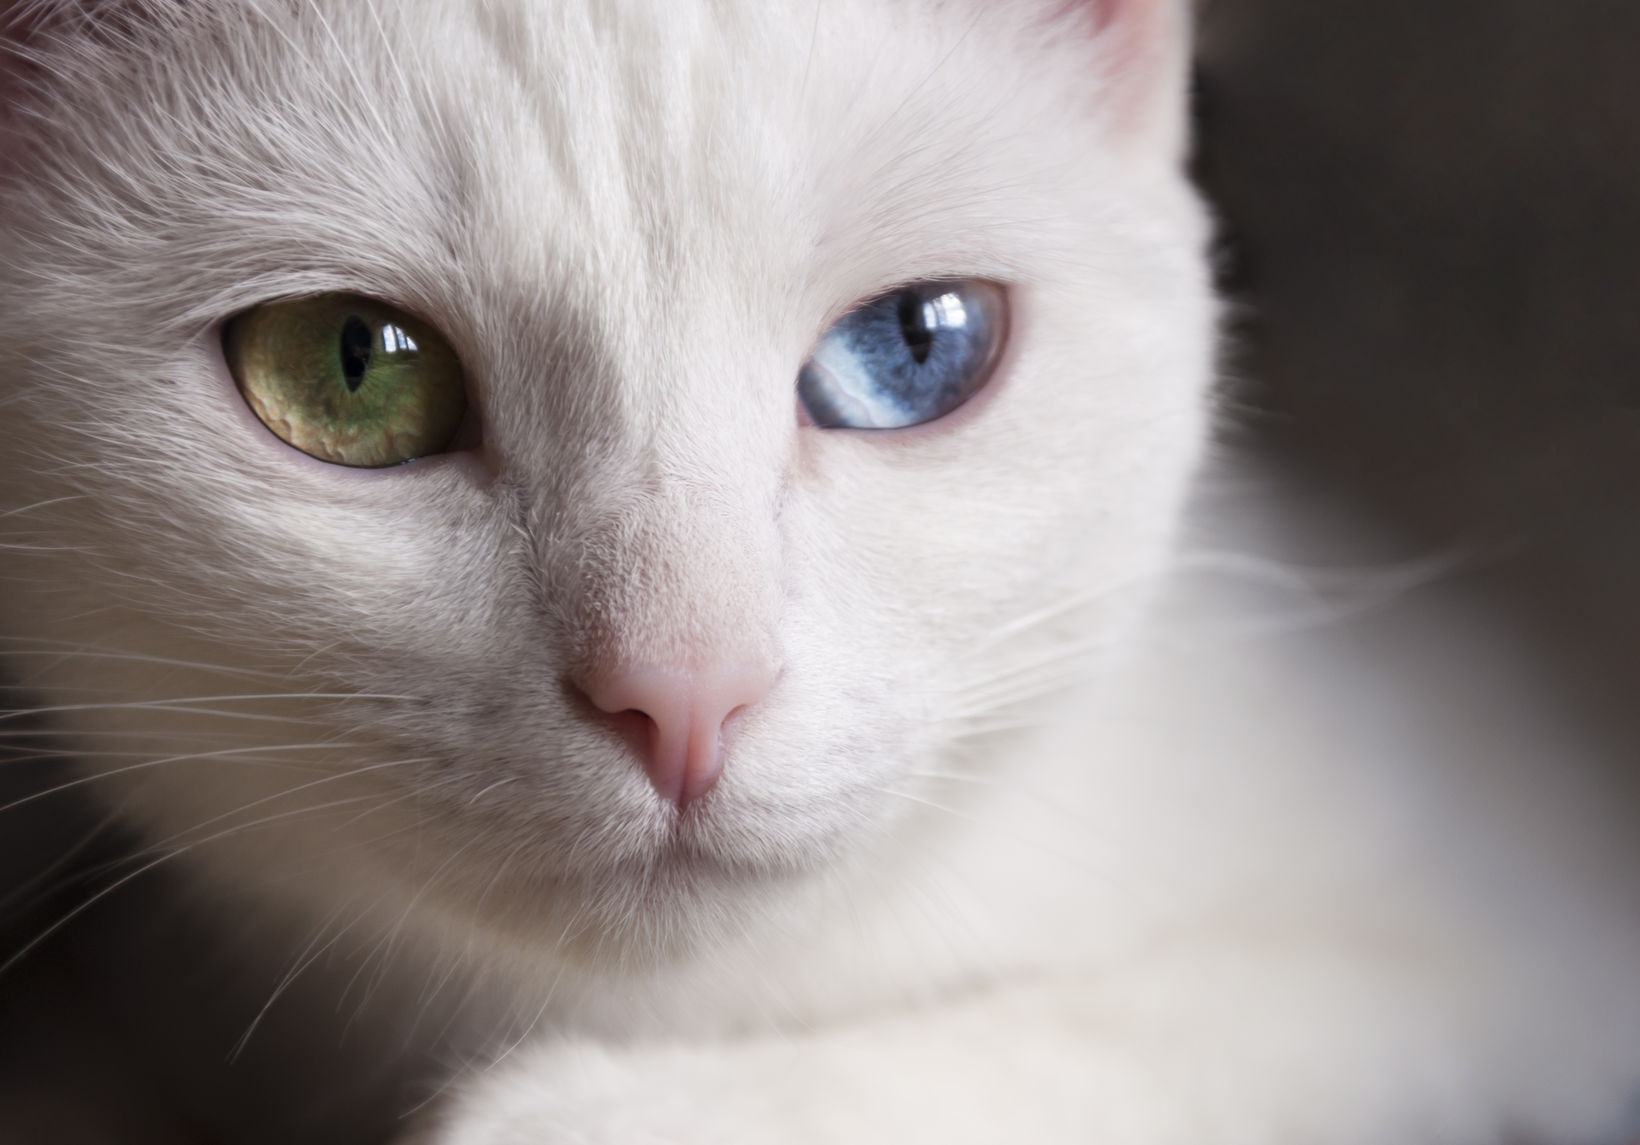 miért veszíti el a macska a szemét a látás miatt fáj a fej